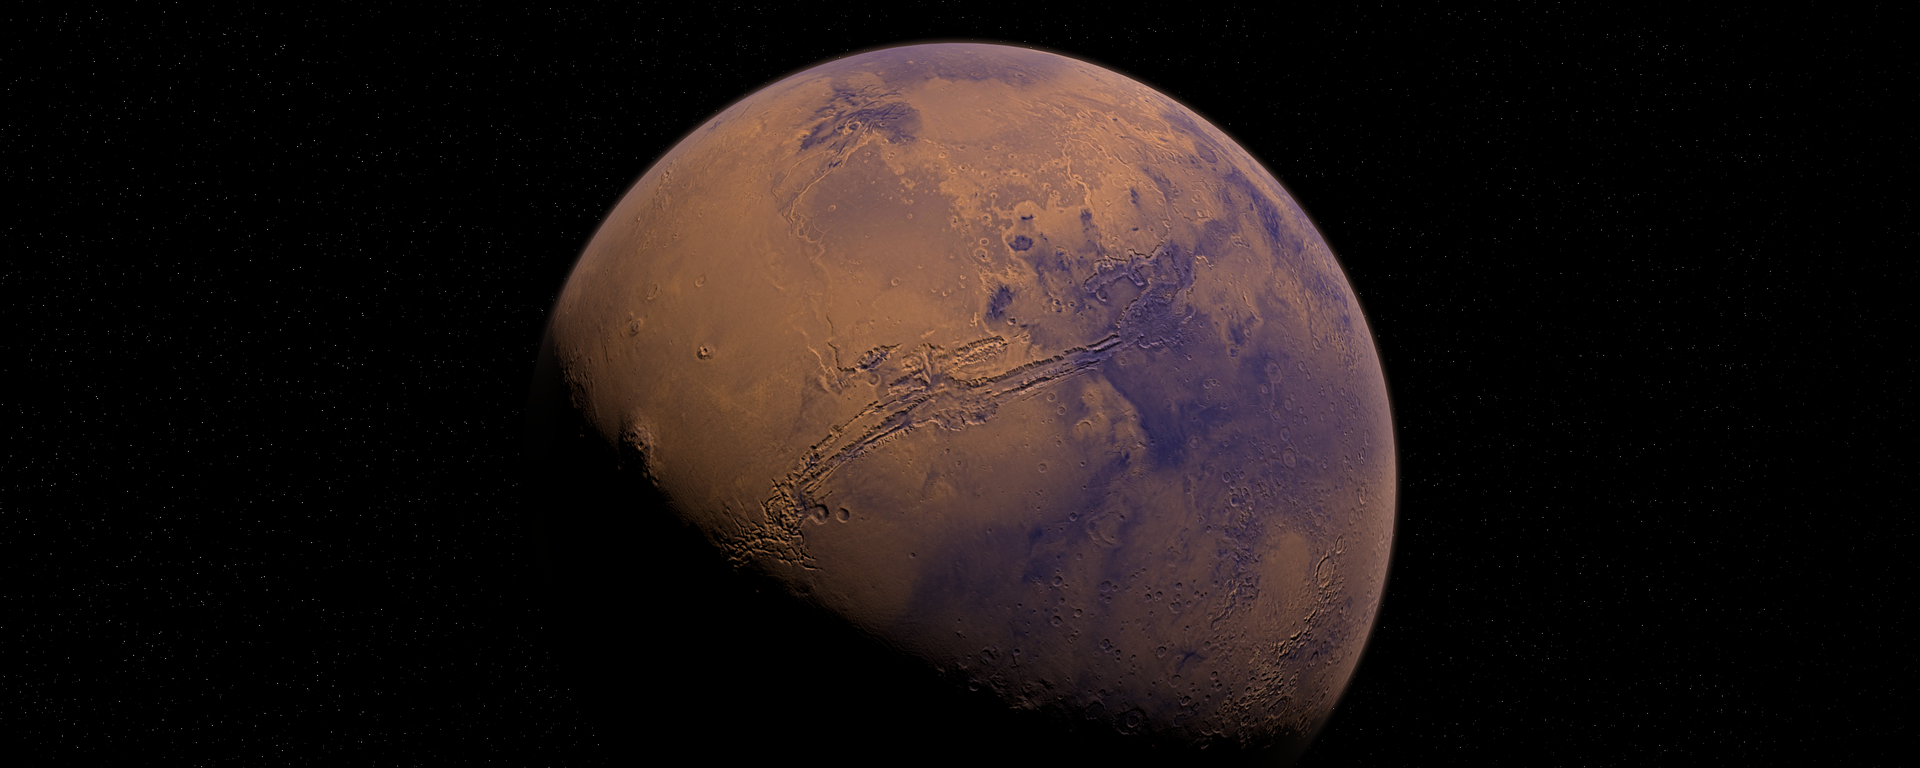 Marte (imagen referencial) - Sputnik Mundo, 1920, 27.02.2021